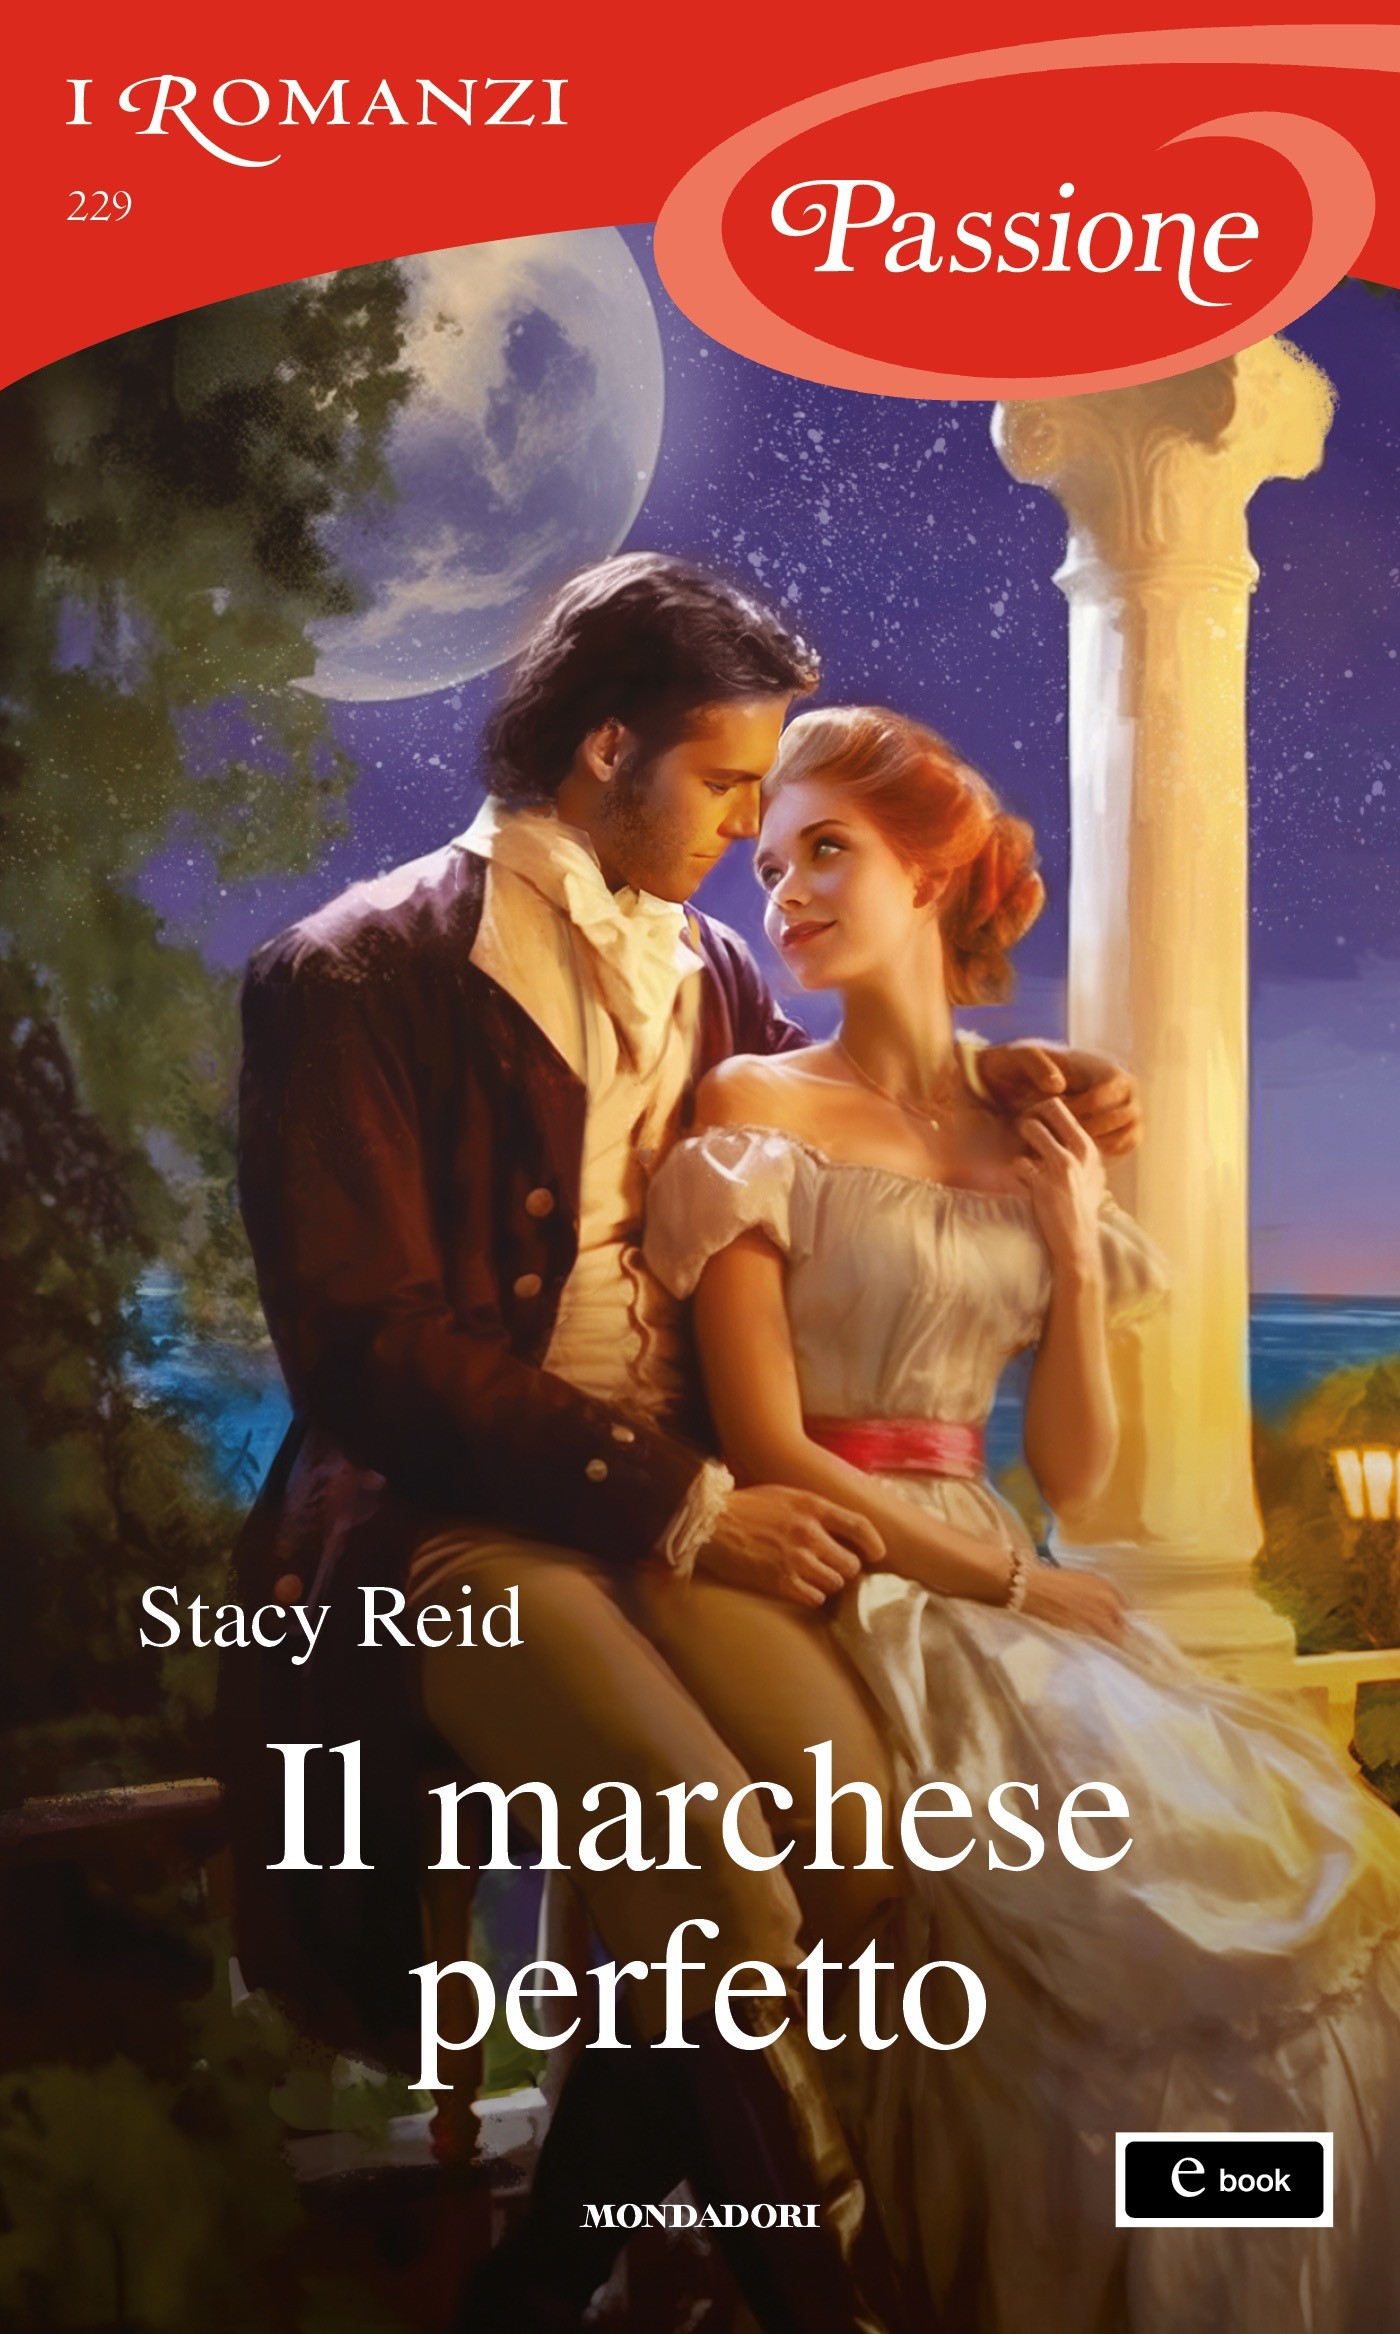 Il marchese perfetto (I Romanzi Passione) - Librerie.coop